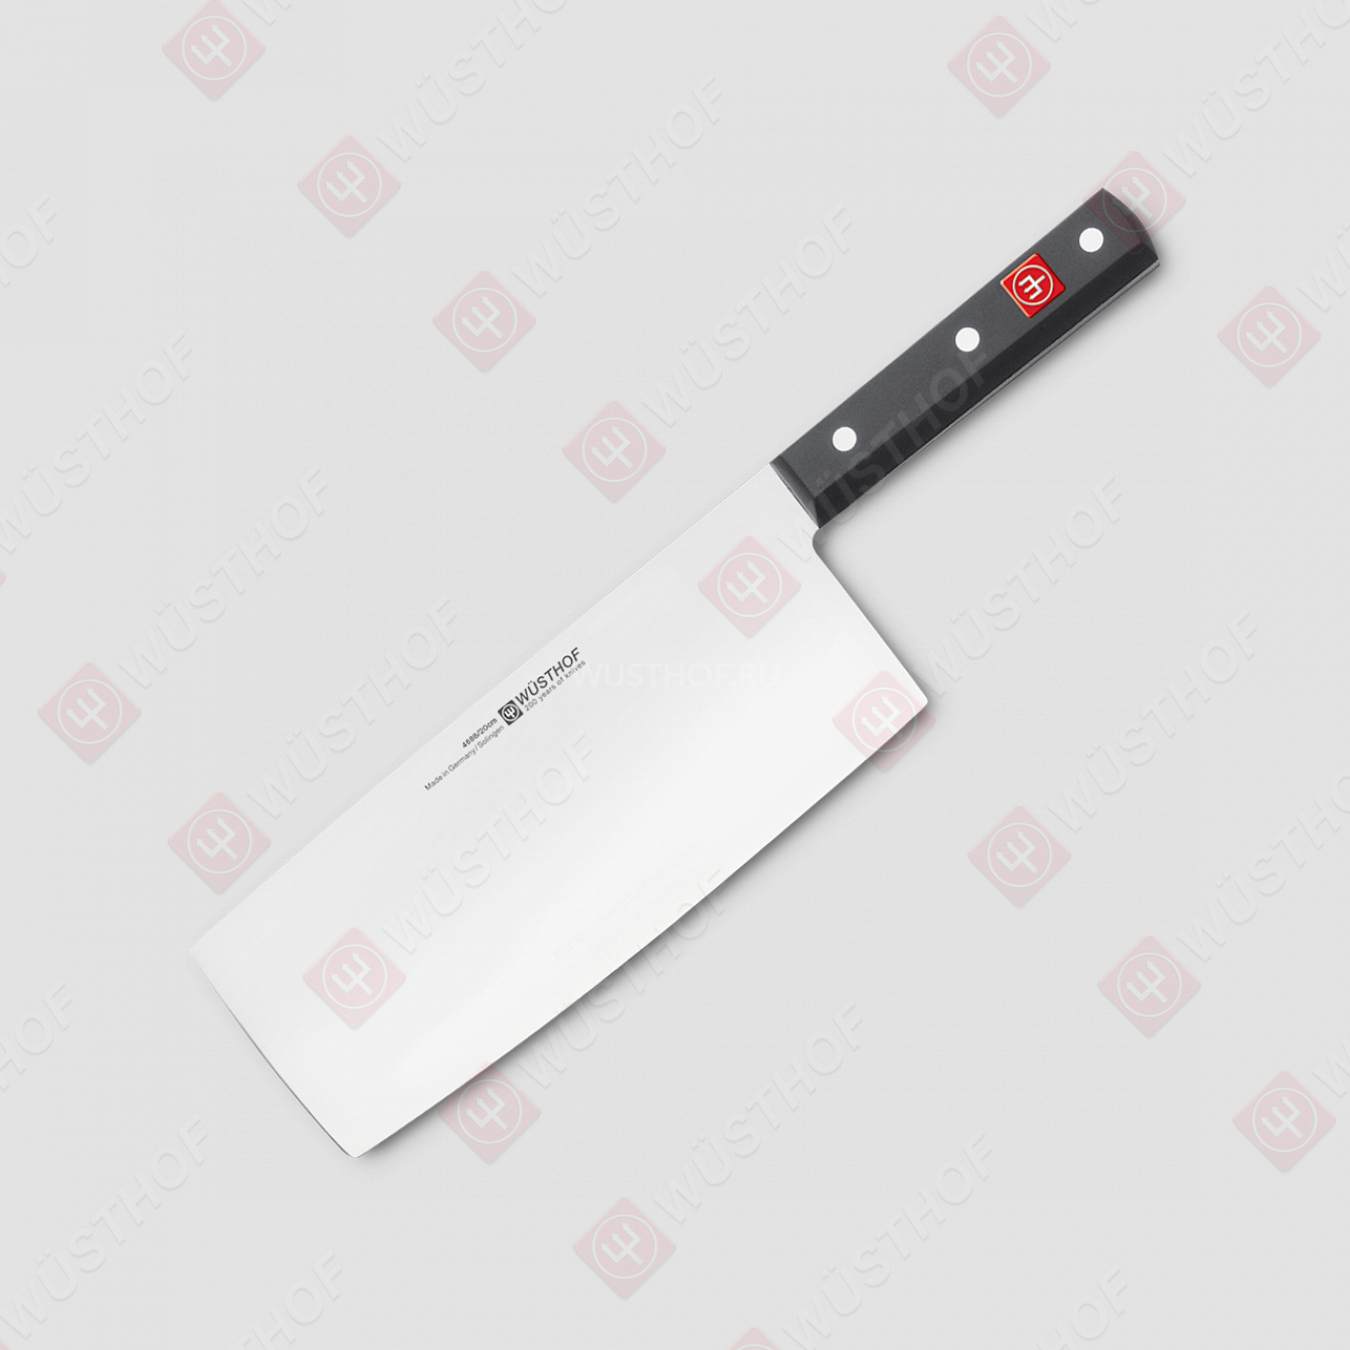 Нож для рубки мяса 20 см, серия Professional tools, WUESTHOF, Золинген, Германия